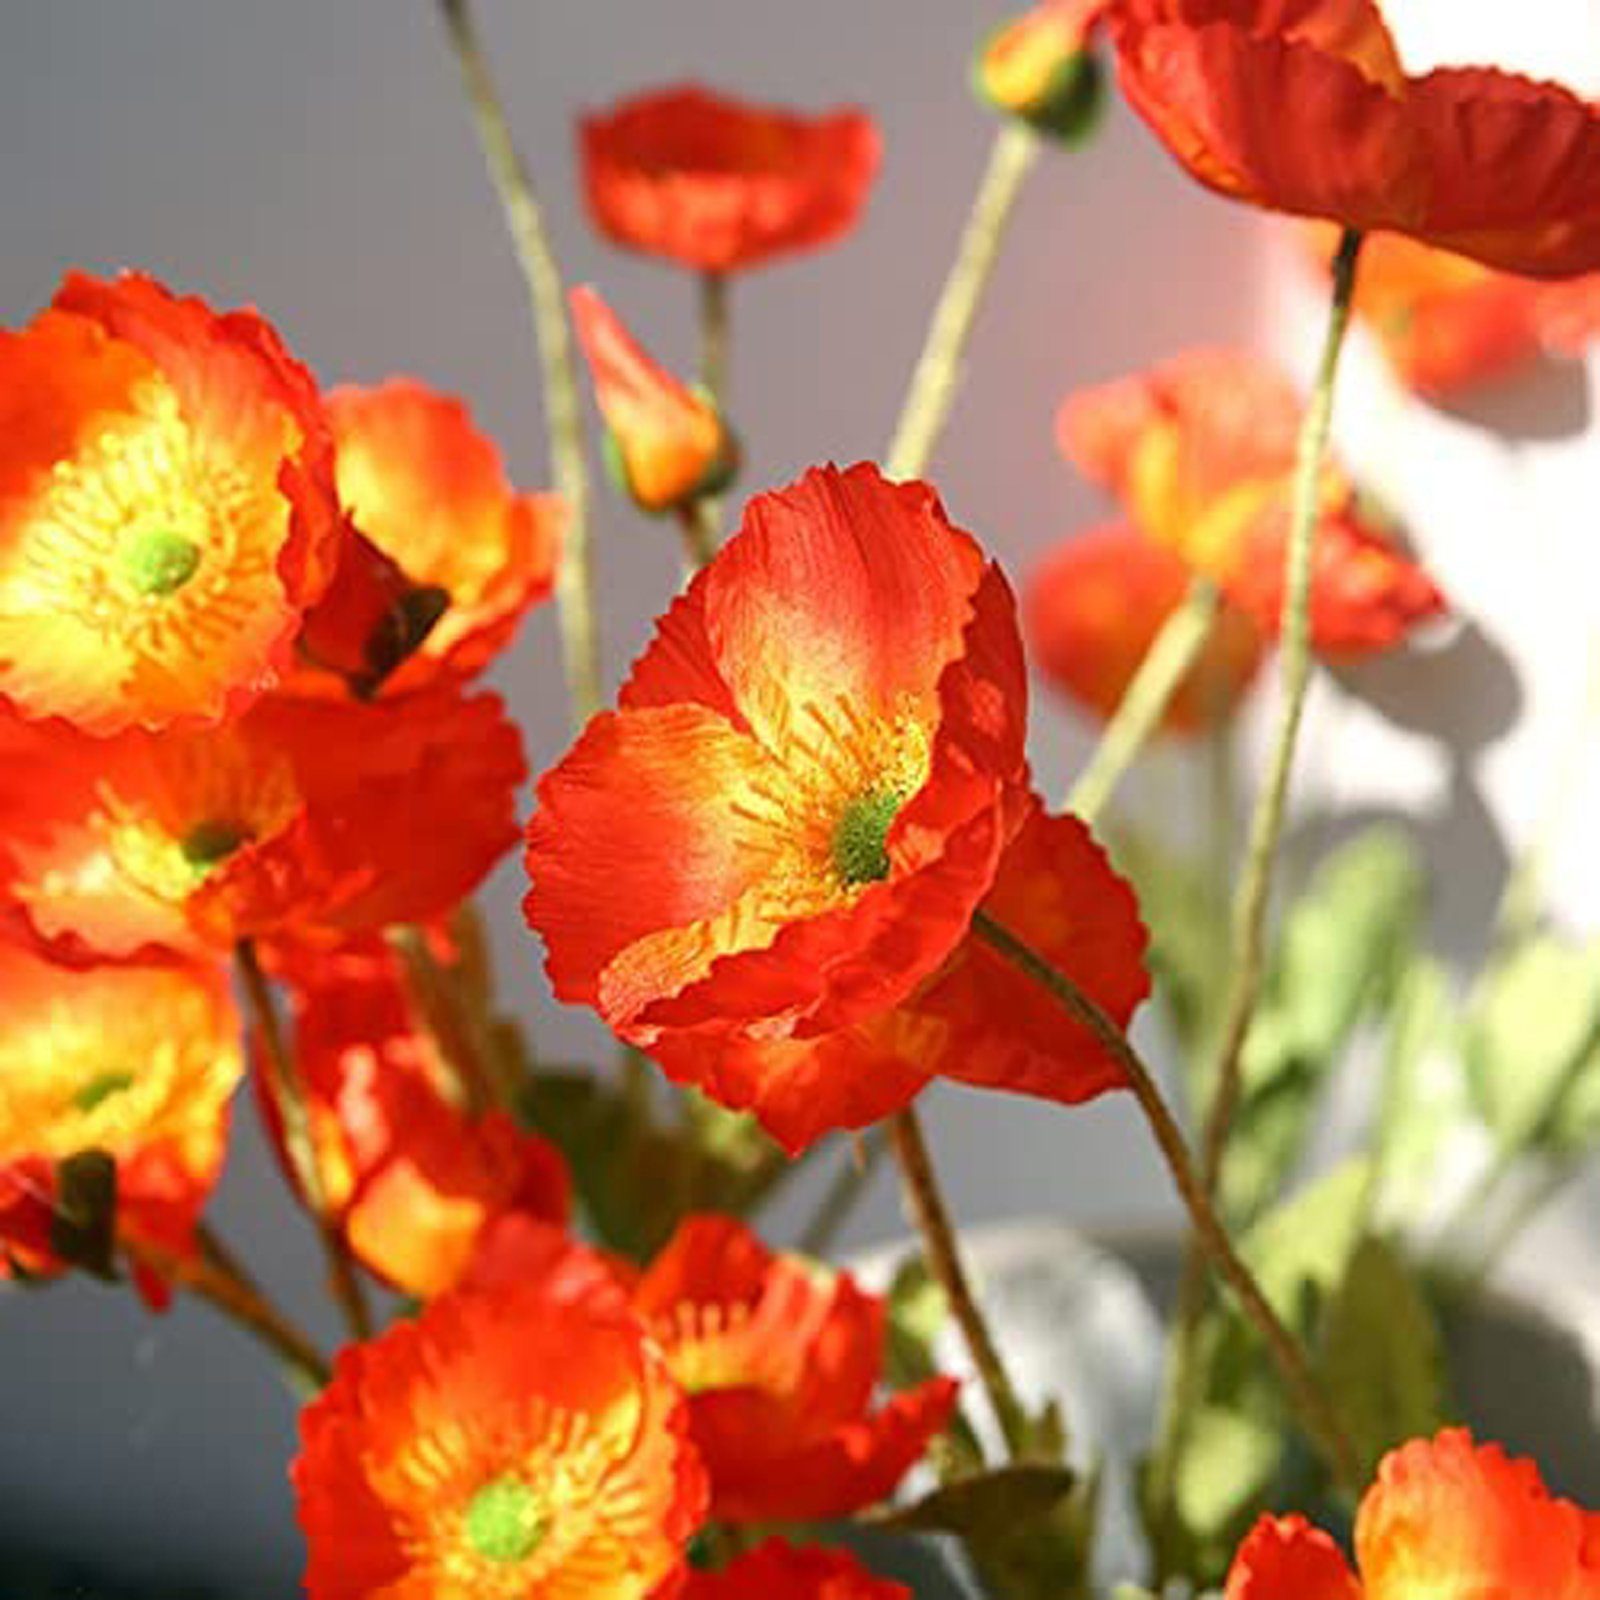 SEEZSSA, Haus Beflockung künstliche MohnSeidenblumen Für Pflanzen Kunstzweig lang Künstlicher Mohnblumen-Zweigmit 4 Blütenköpfen Blumenschmuck,60cm Kunststoff, Orange-gelb